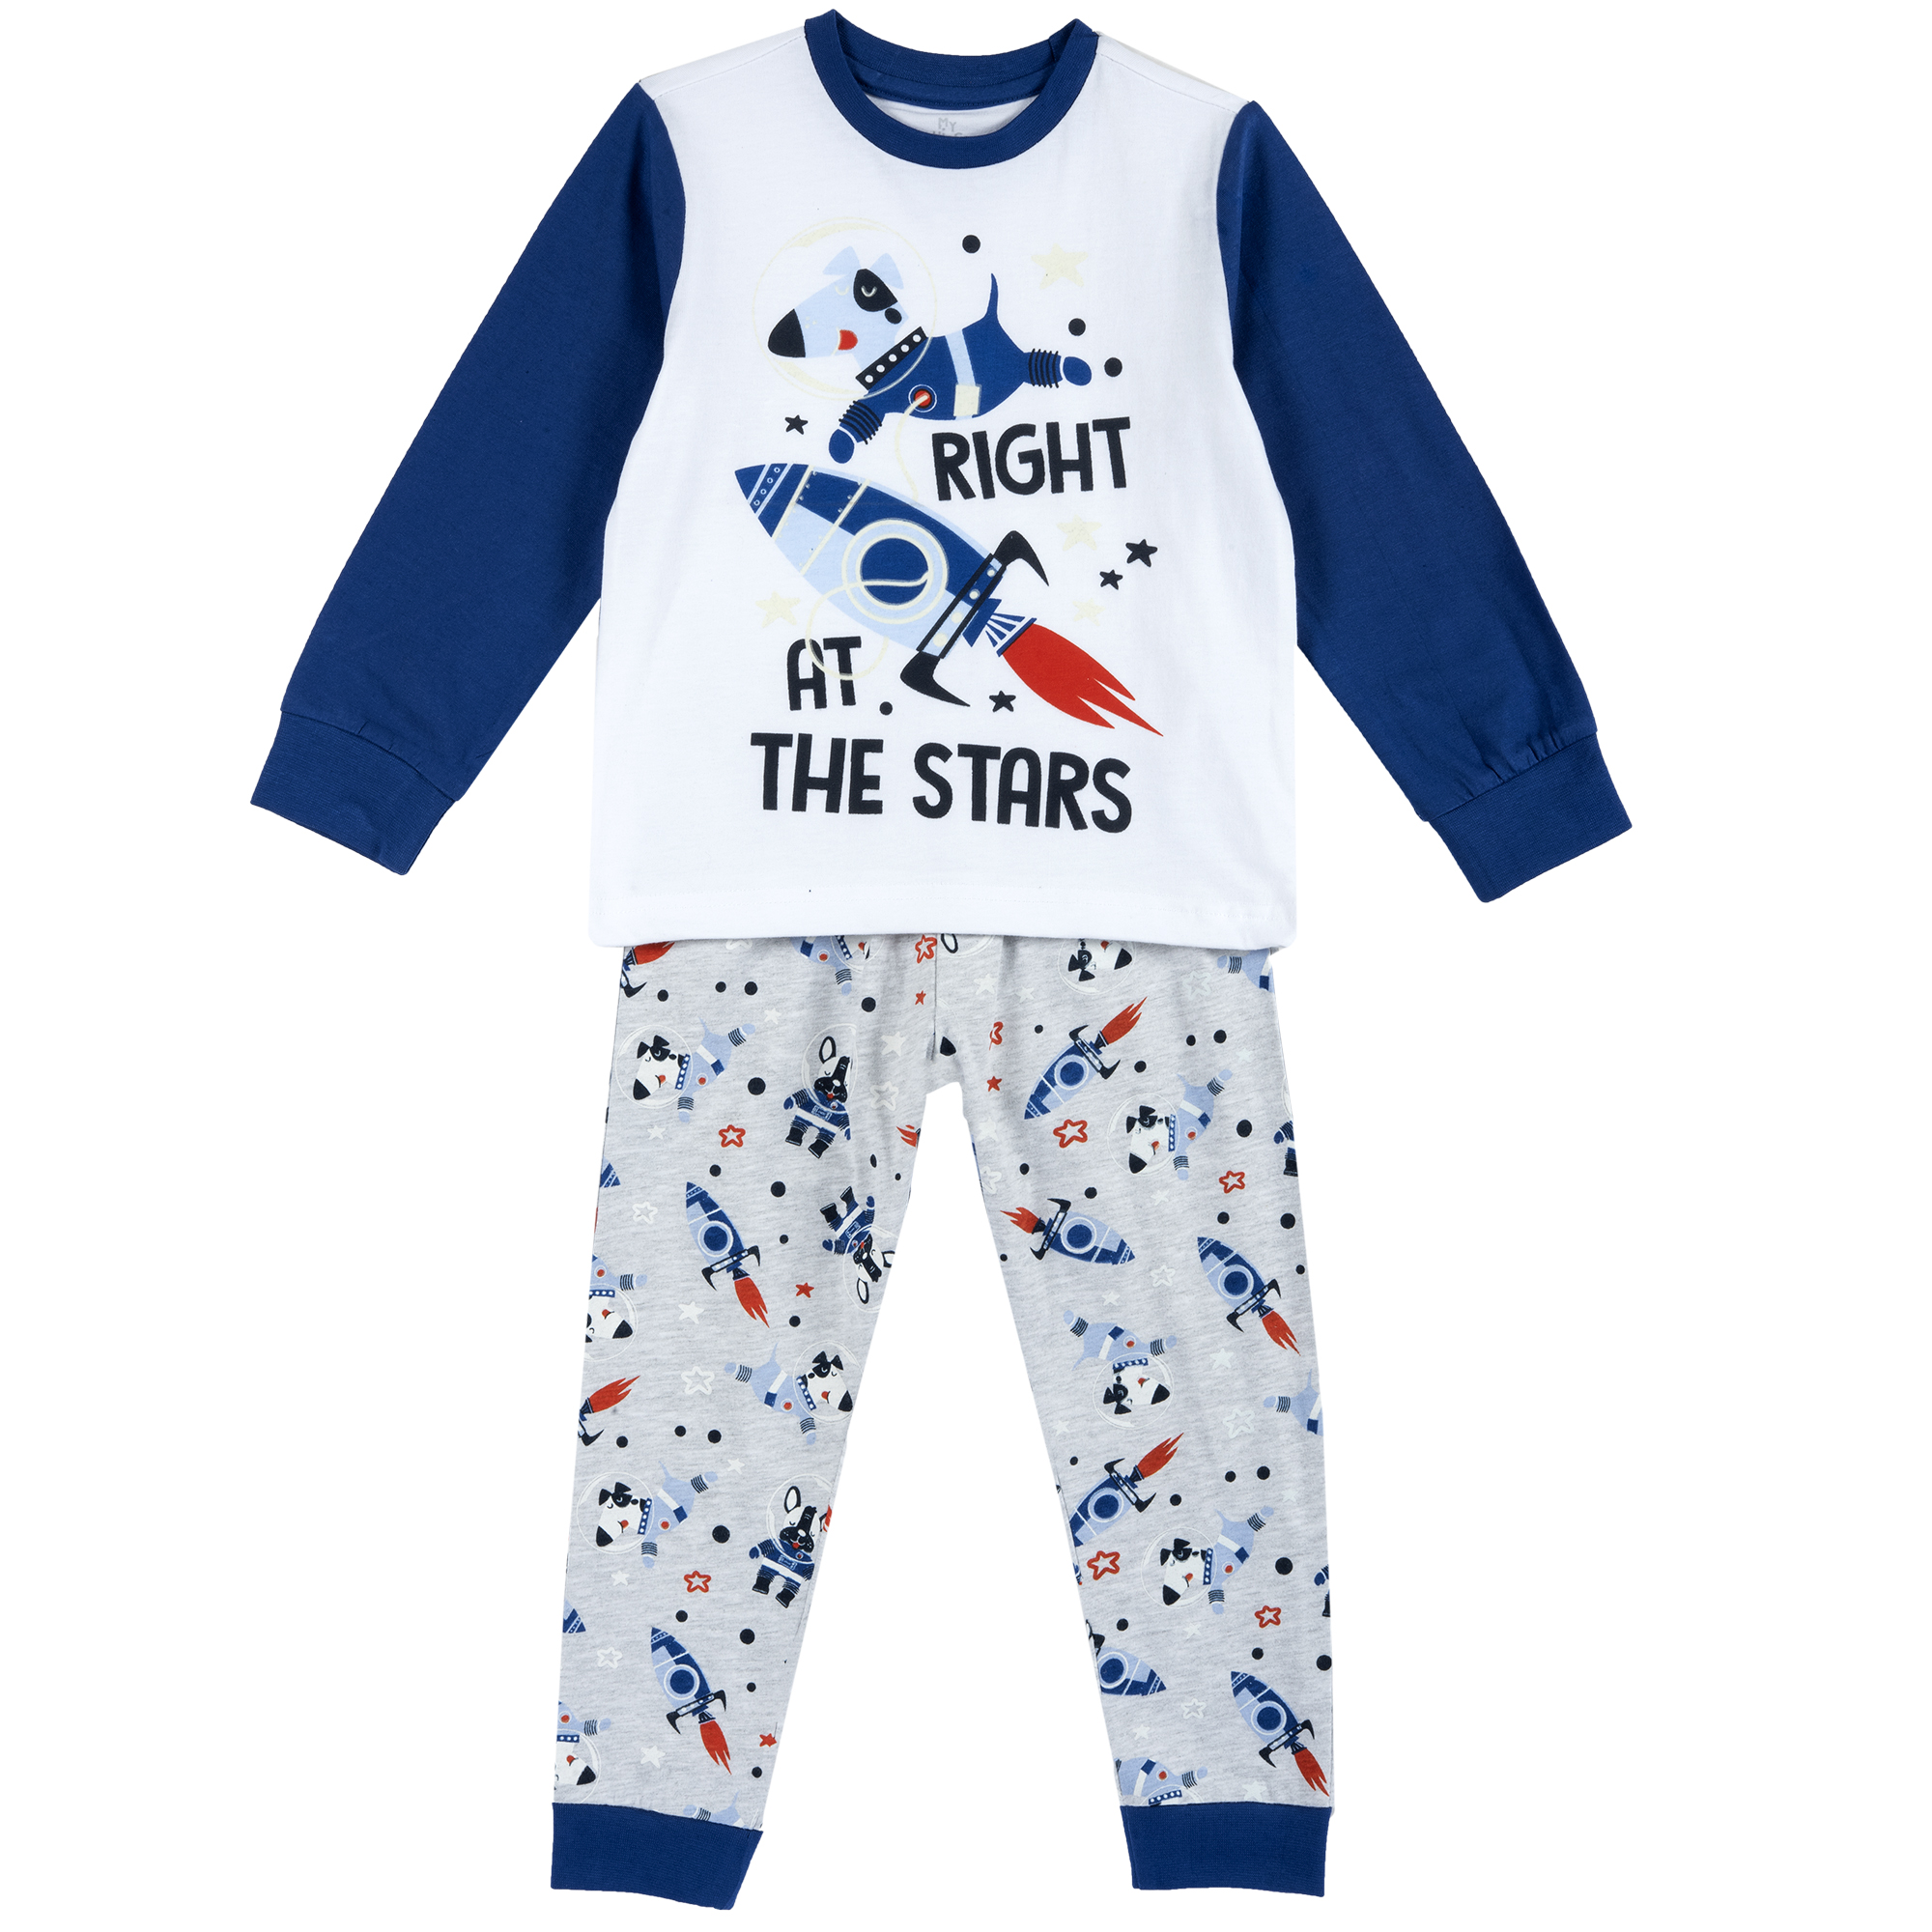 Pijama copii Chicco, albastru cu model, 31356 CHICCO